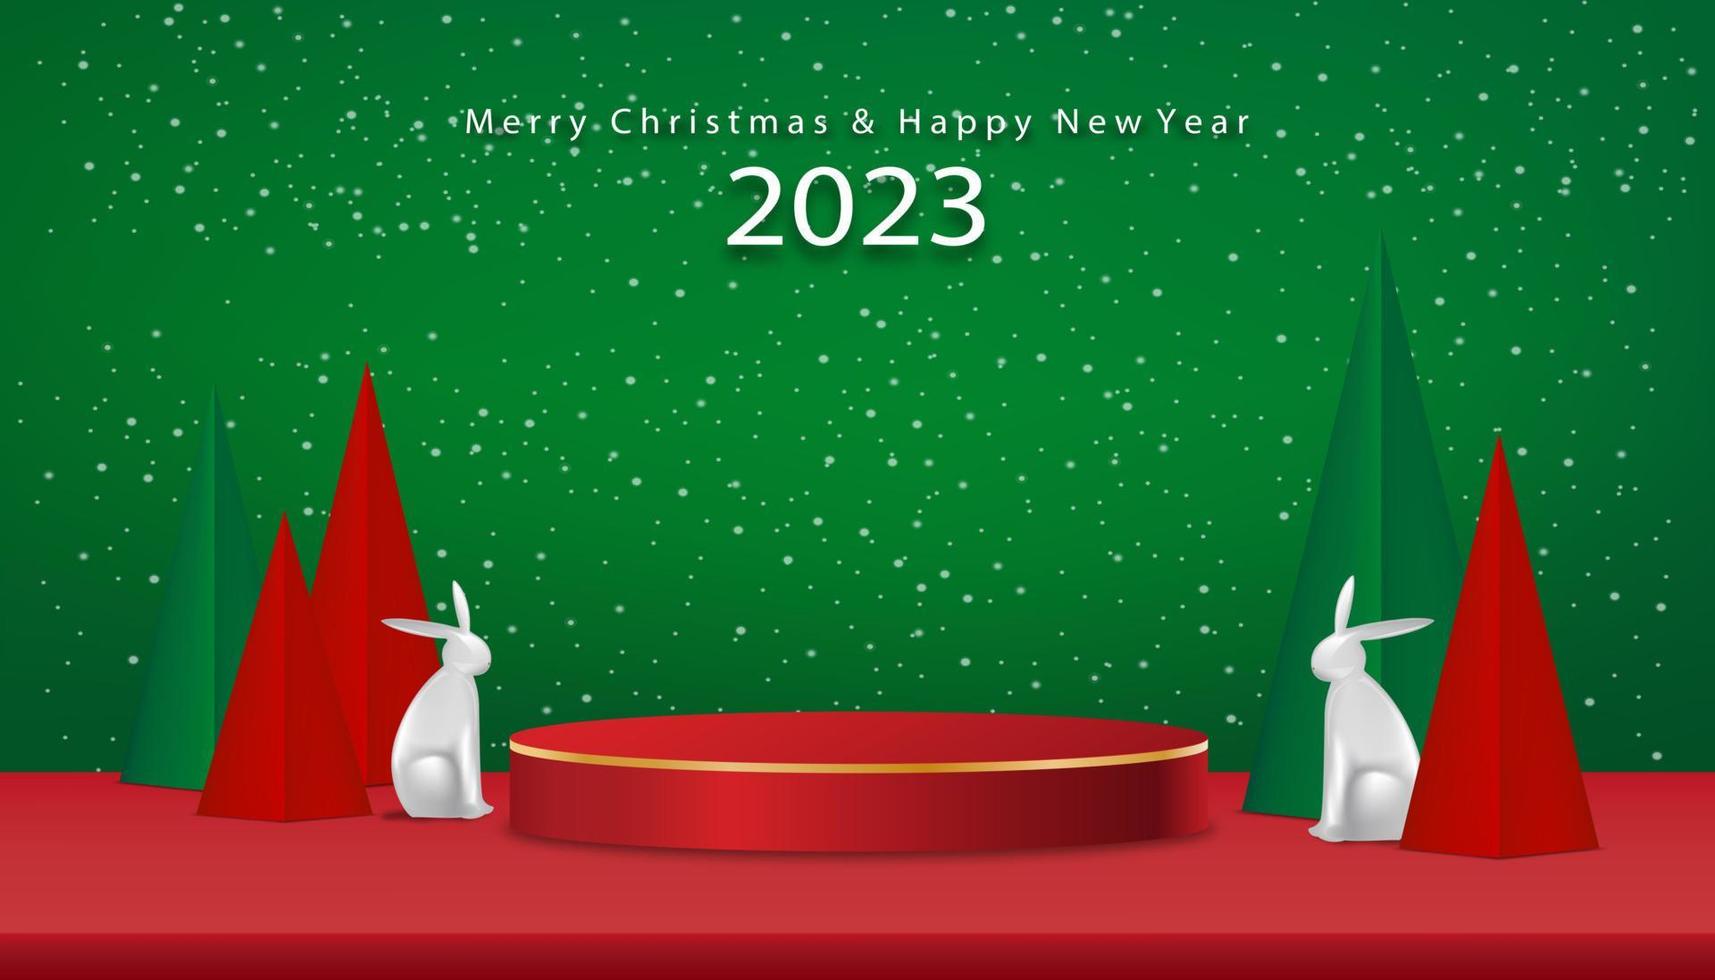 weihnachten und chinesisches neujahr 2023 hintergrund mit 3d podium, kaninchen, weihnachtsbäume papierschnitt auf grünem hintergrund, x-mas kiefer tanne üppiger baum.vektor winterurlaub zusammensetzung für grußkarte, banner vektor